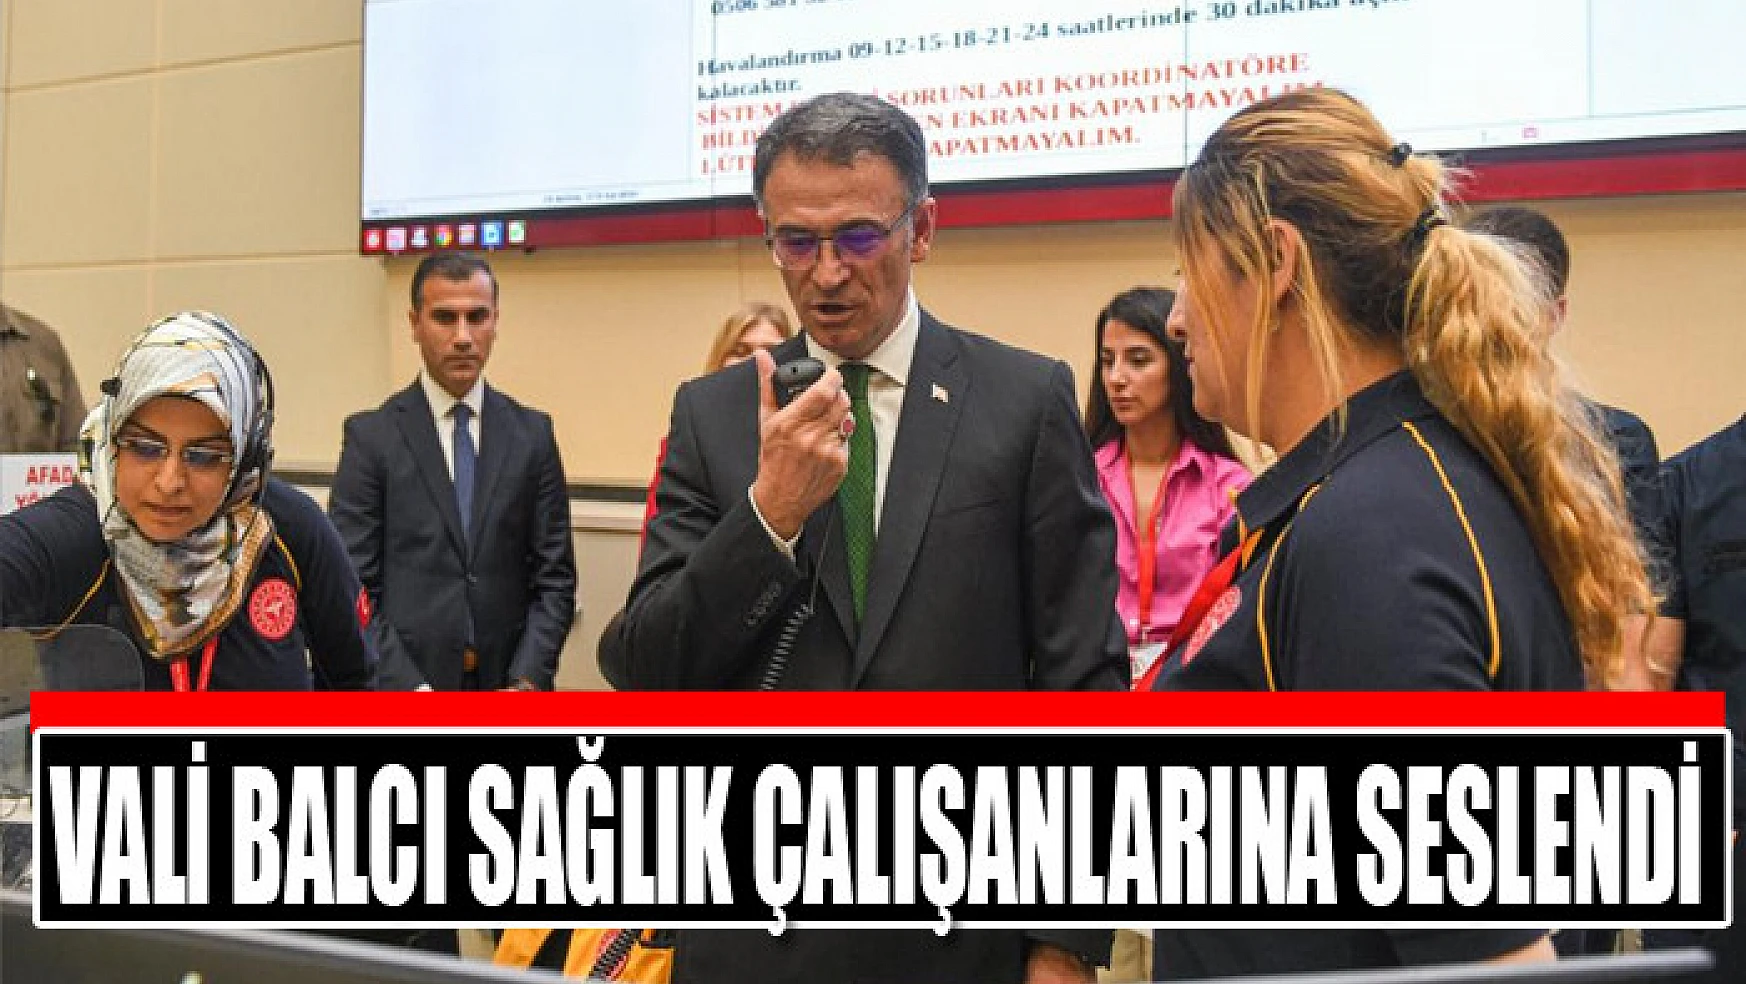 Vali Balcı sağlık çalışanlarına seslendi